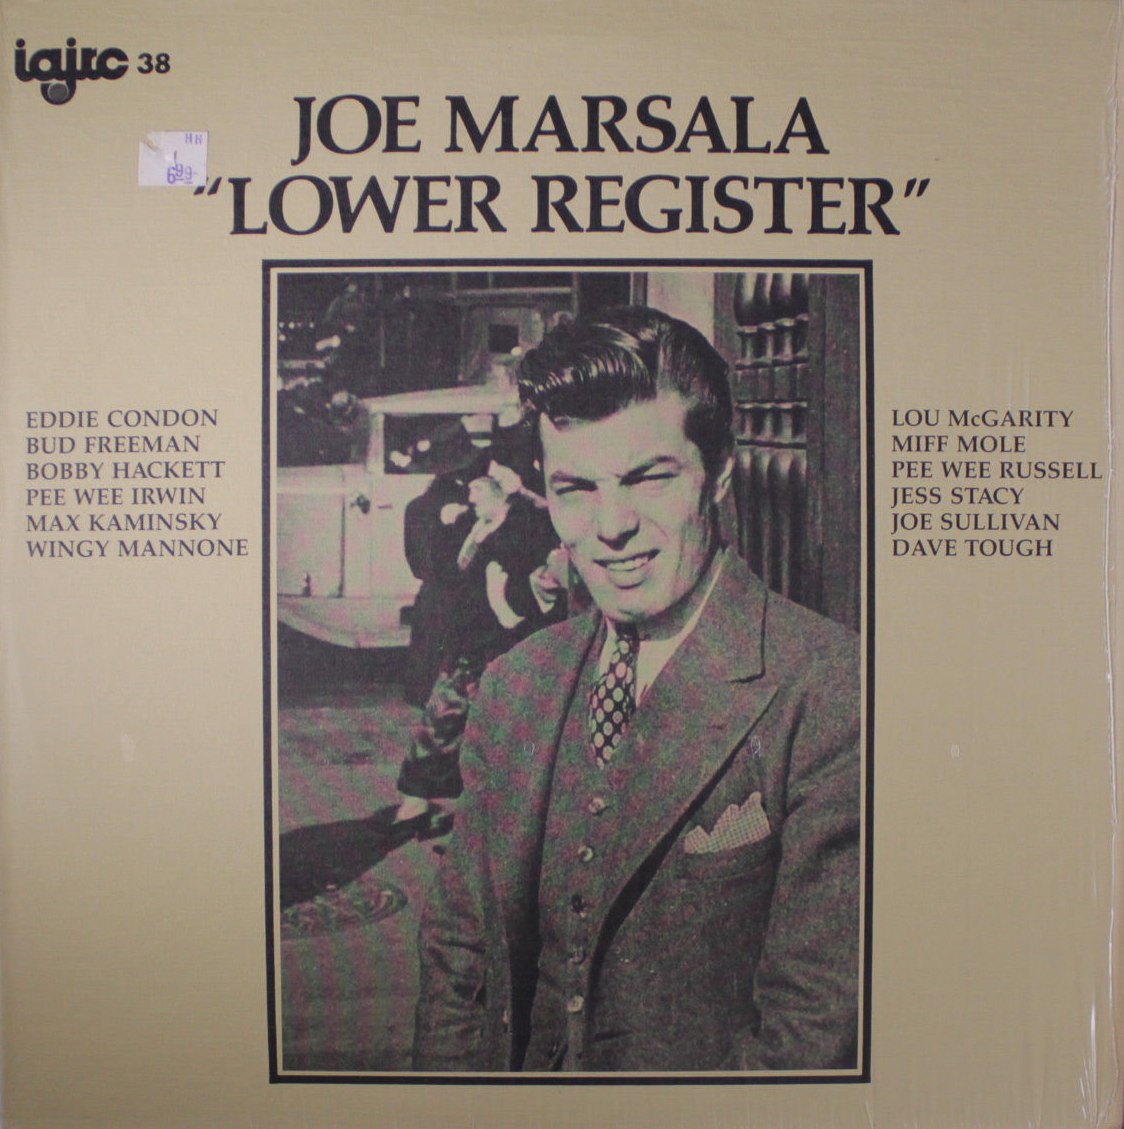 JOE MARSALA - Lower Register cover 